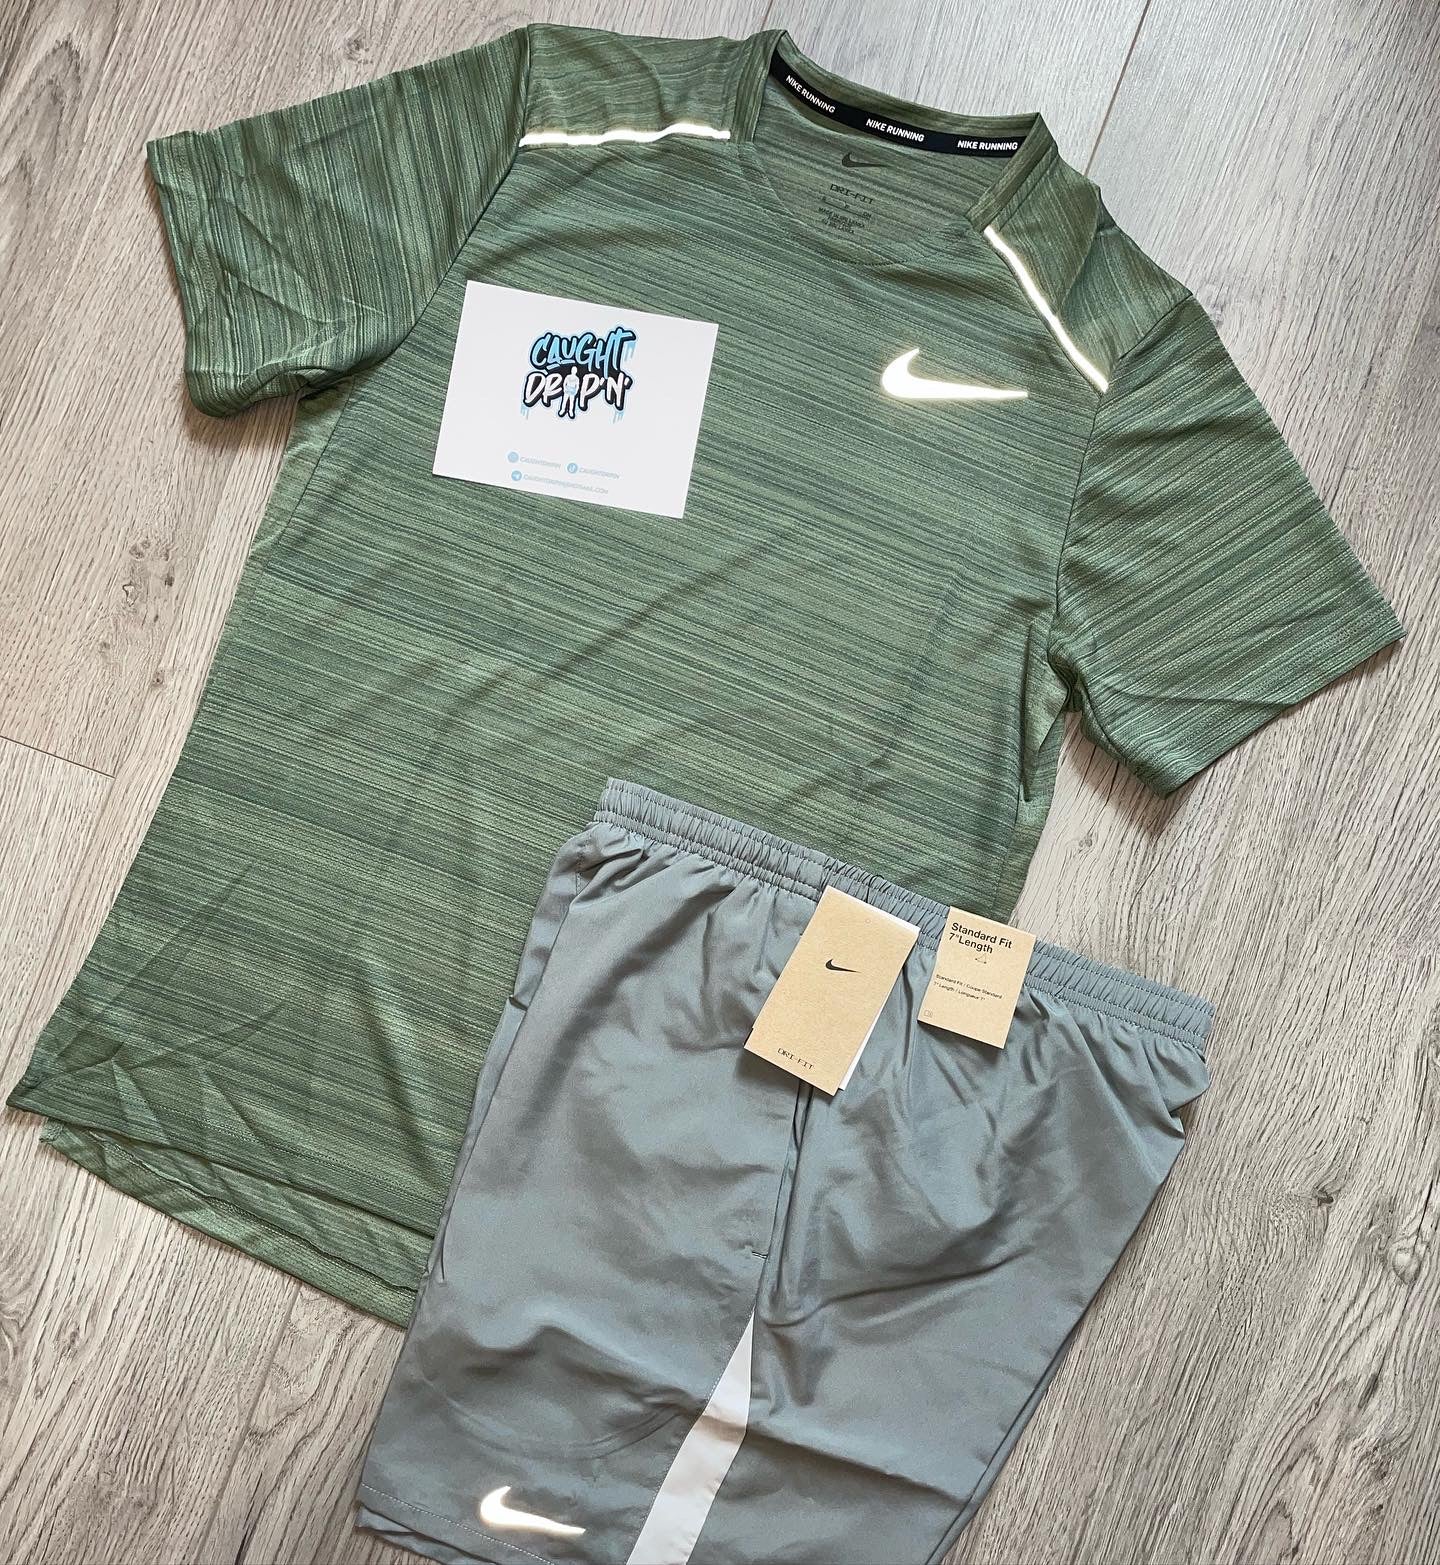 OG Nike Miler Set | Olive Green